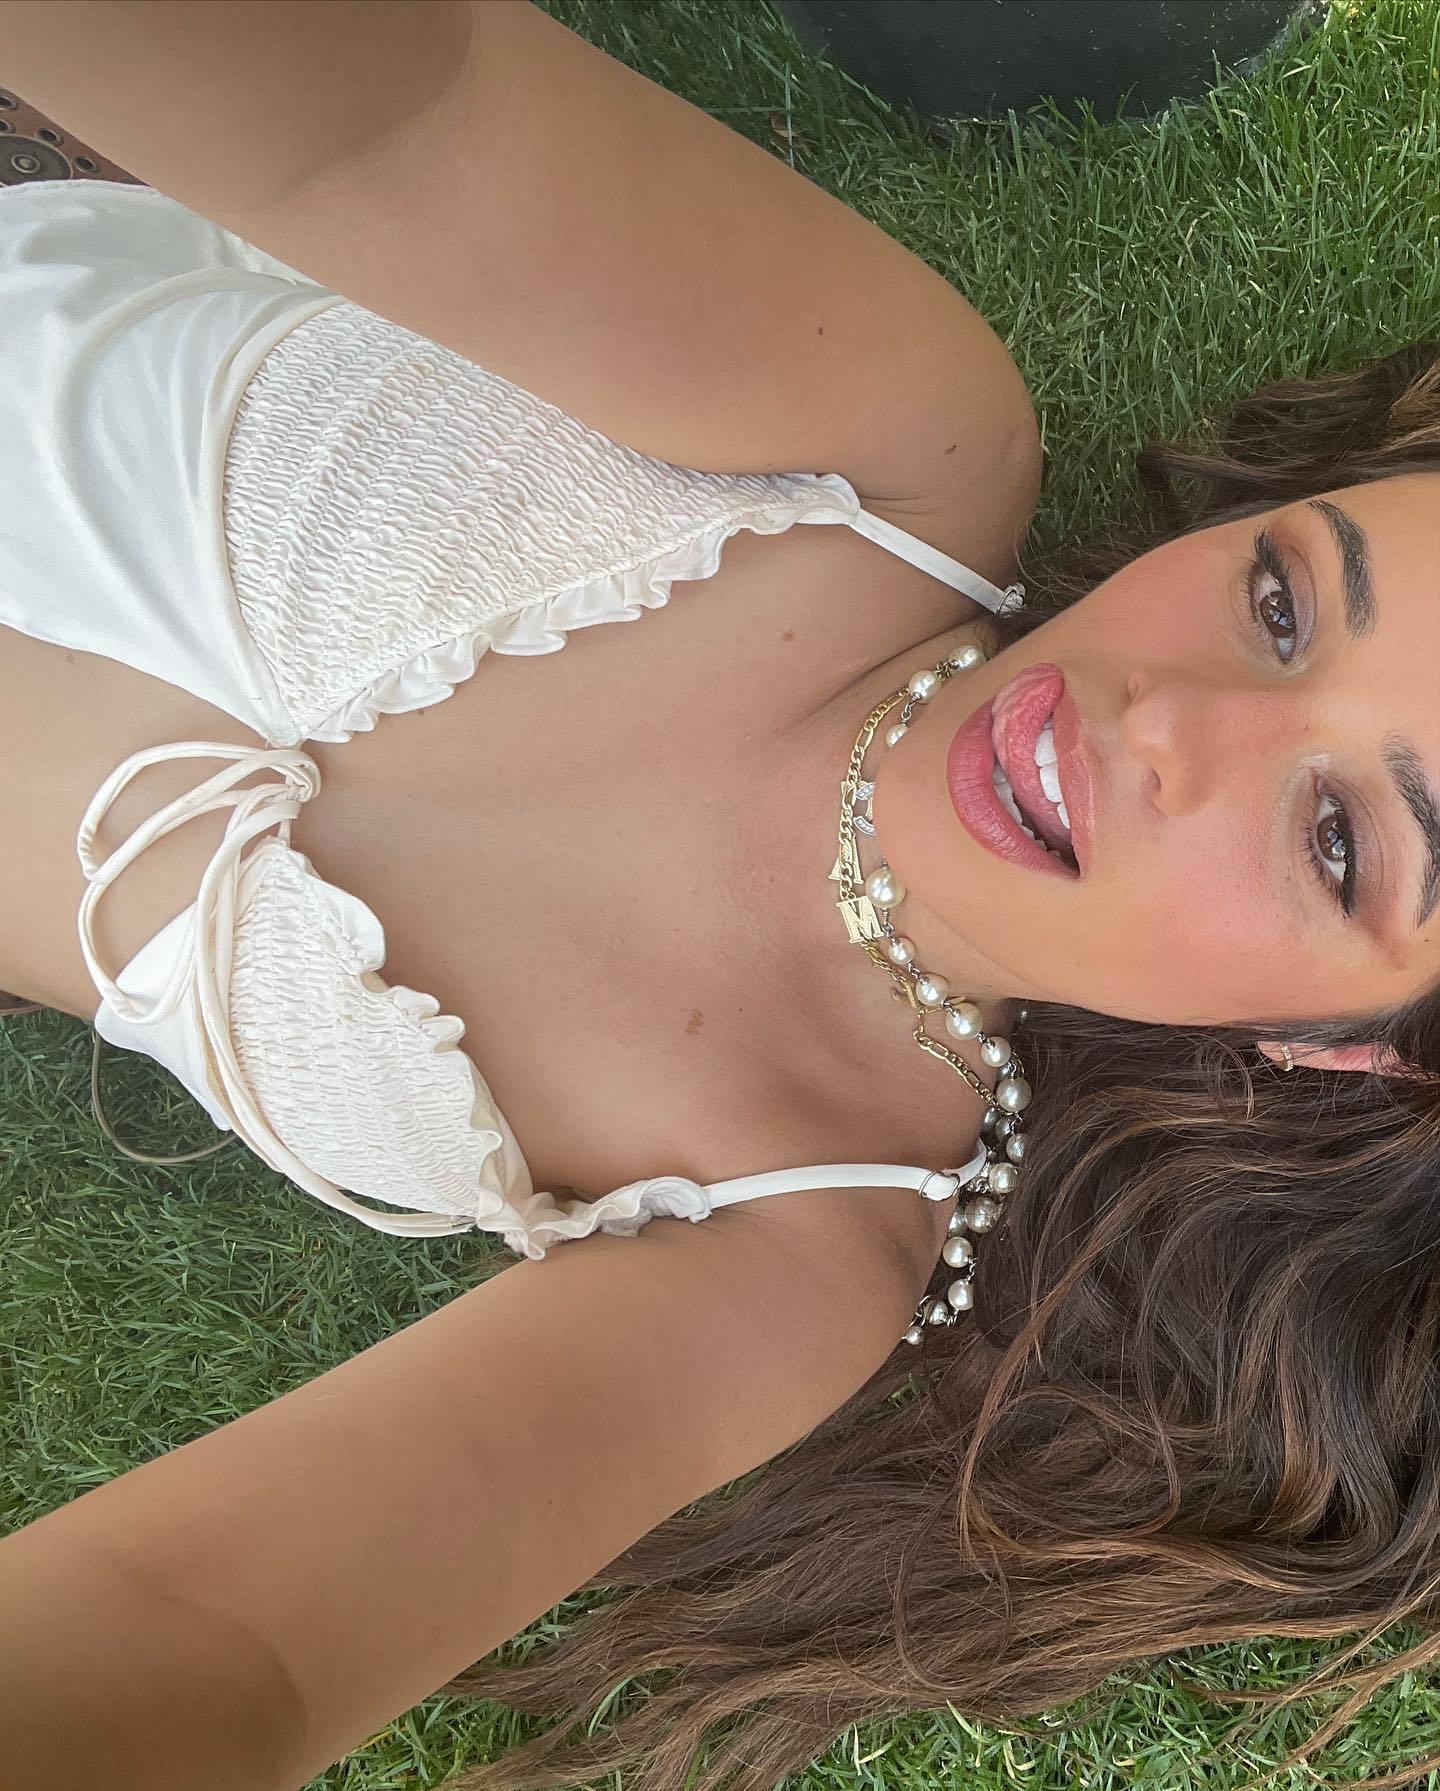 FOTOS Selfie en bikini de Camila Cabello! - Photo 1